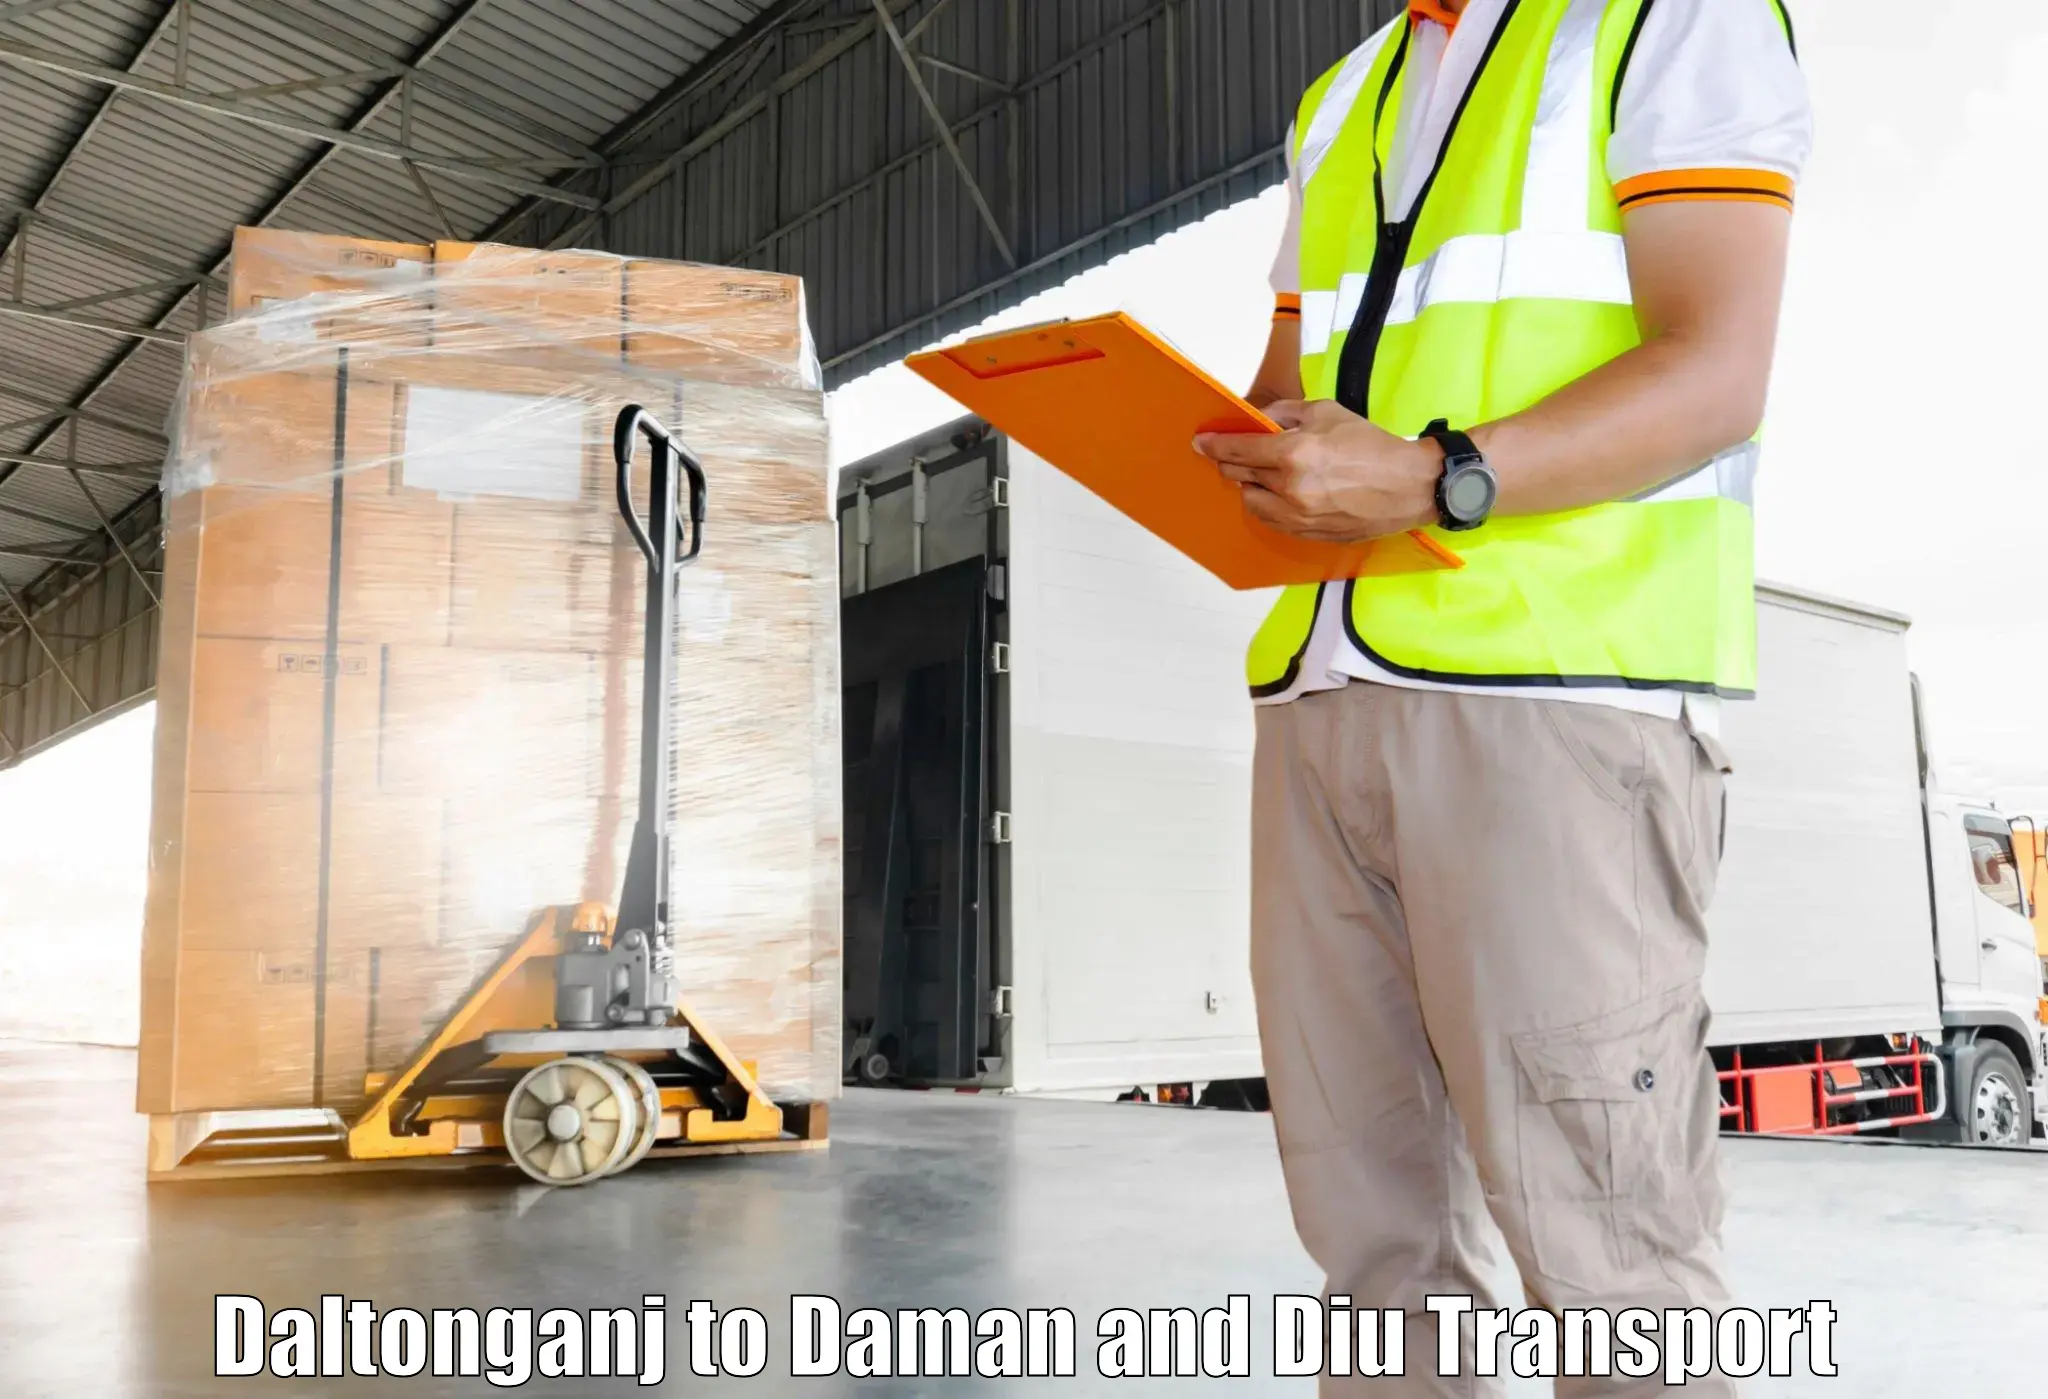 Transport shared services Daltonganj to Daman and Diu